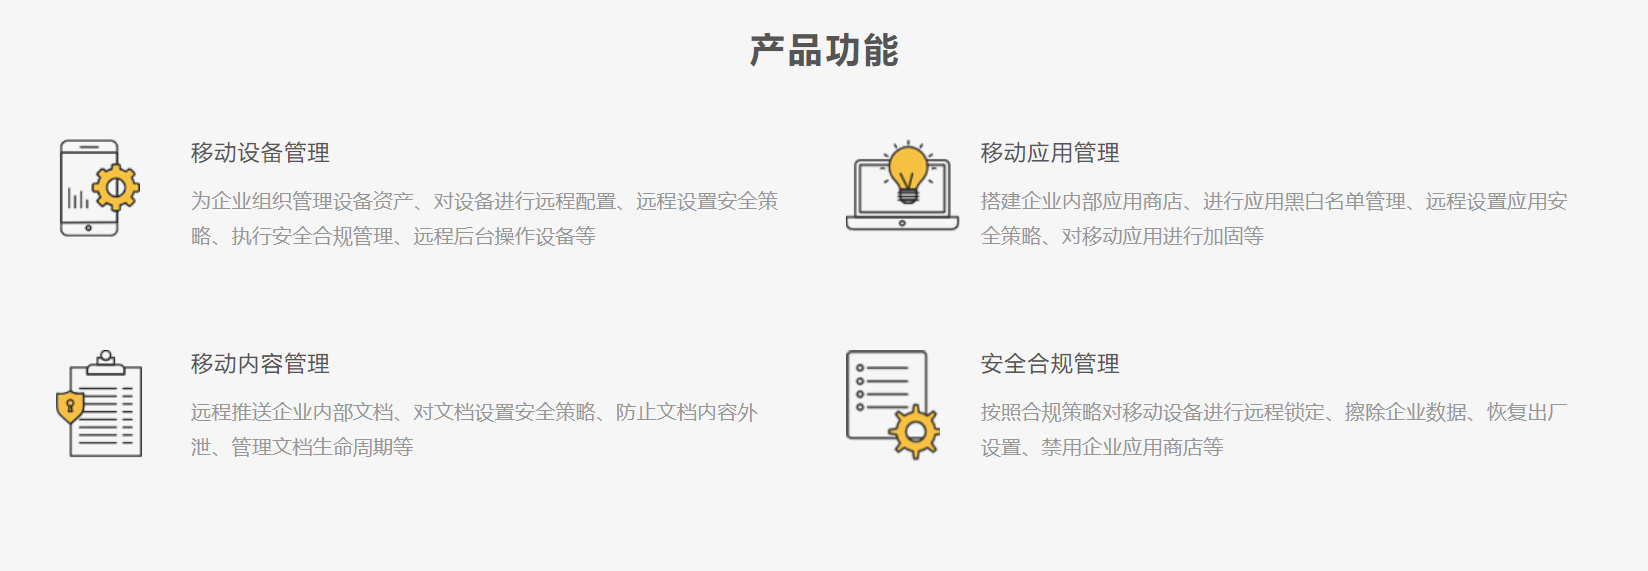 上海天策長(cháng)利信息科技有限公司提供MDM,mdm系統,emm軟件,emm平台等方案及業務